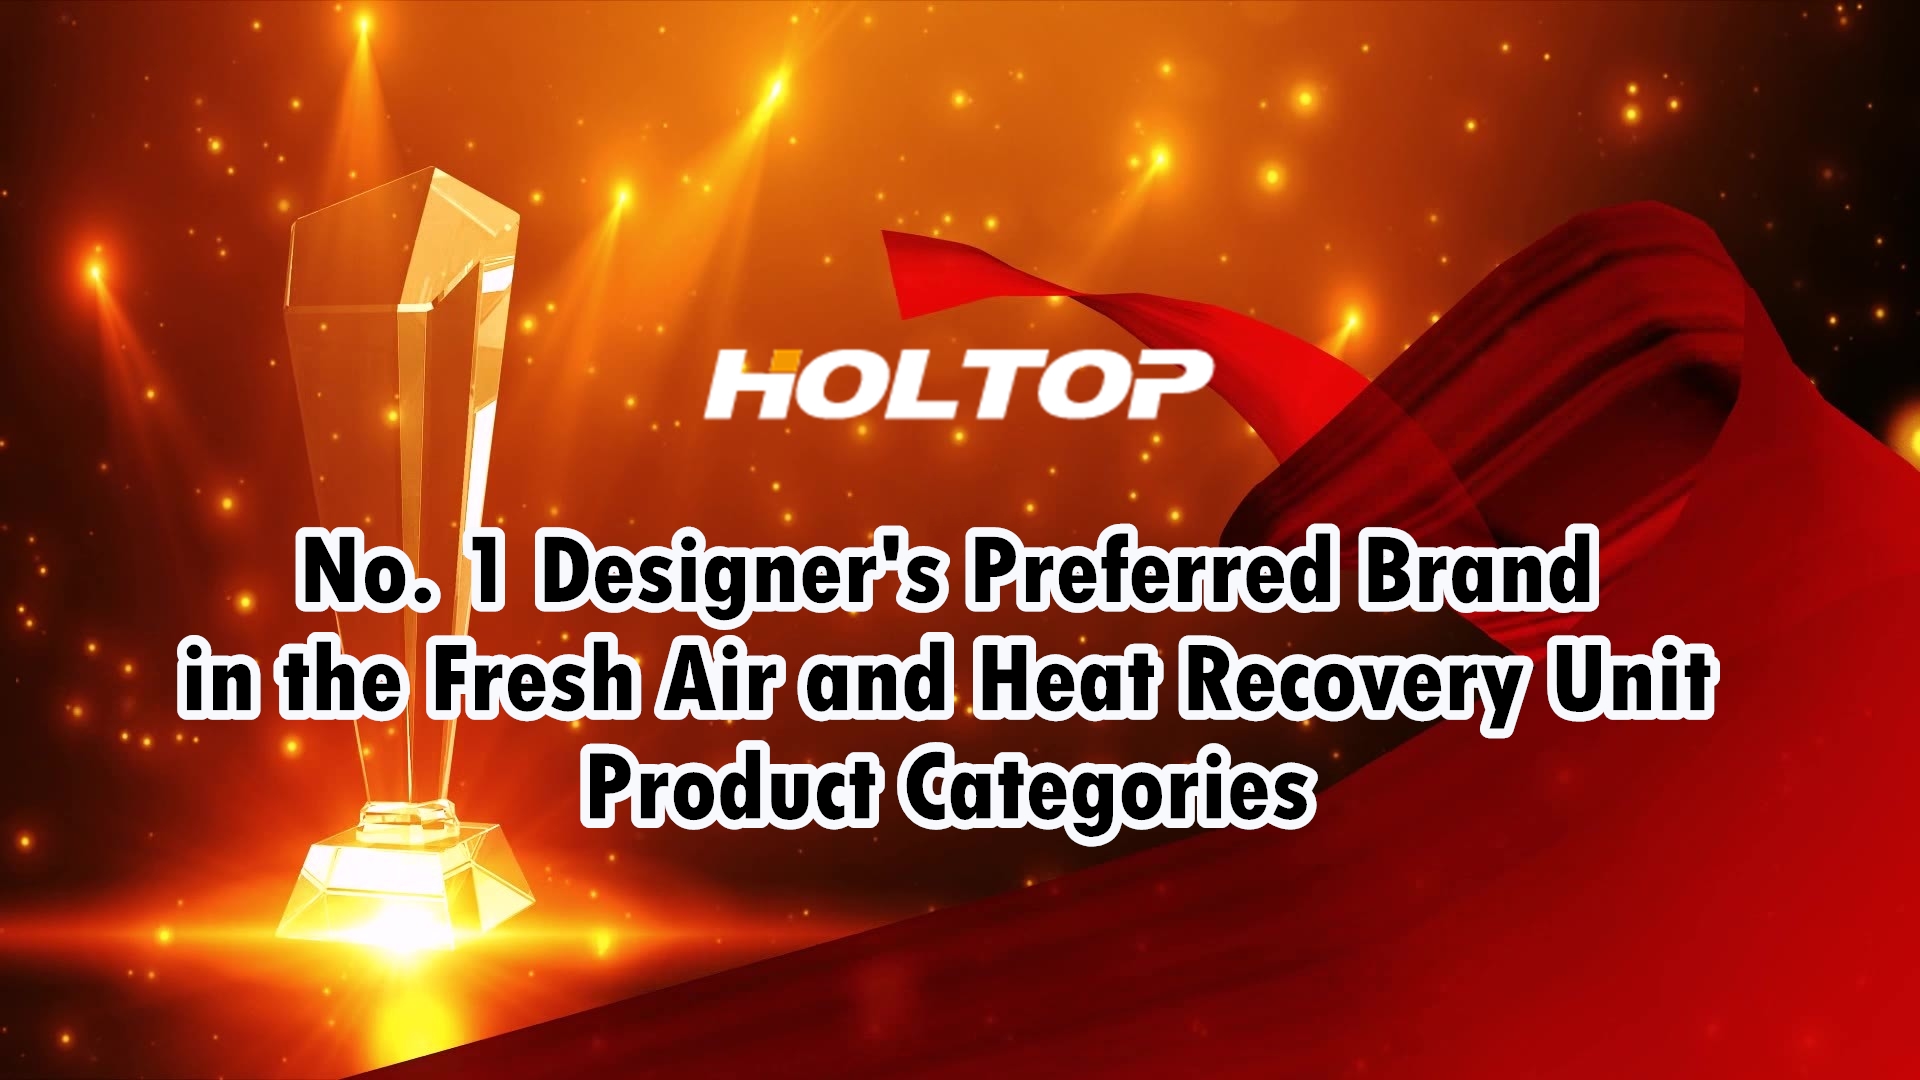 HOLTOP è il marchio preferito dai designer n. 1 nelle categorie di prodotti per unità di recupero di calore e aria fresca nel mercato cinese